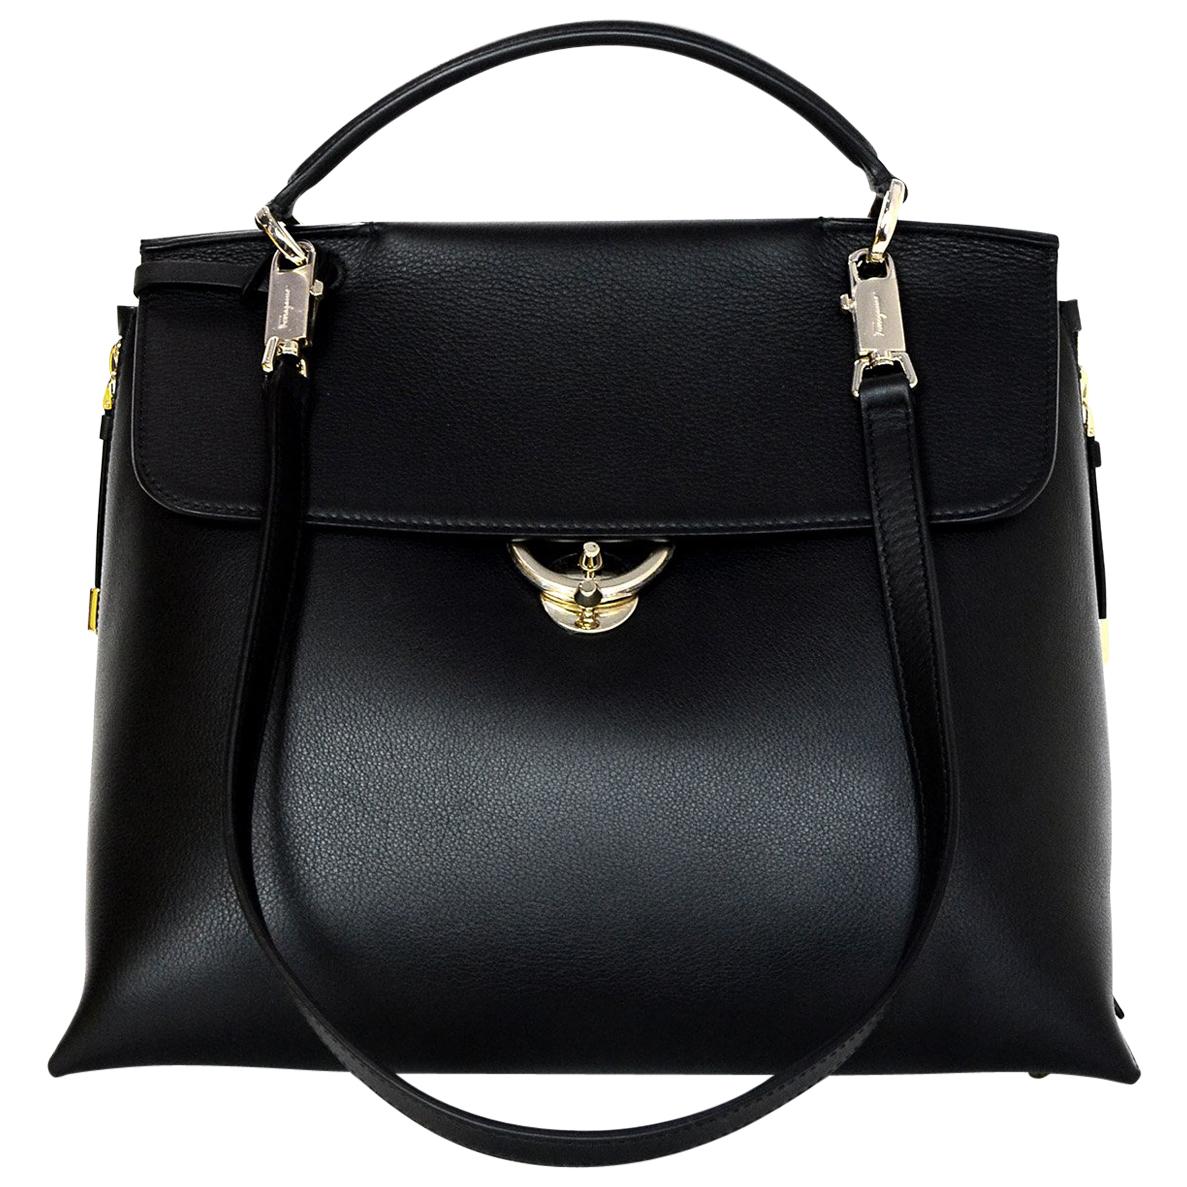 Ferragamo Black Calfskin Leather "Jet Set" Top Handle Tote Bag W/ Shoulder Strap